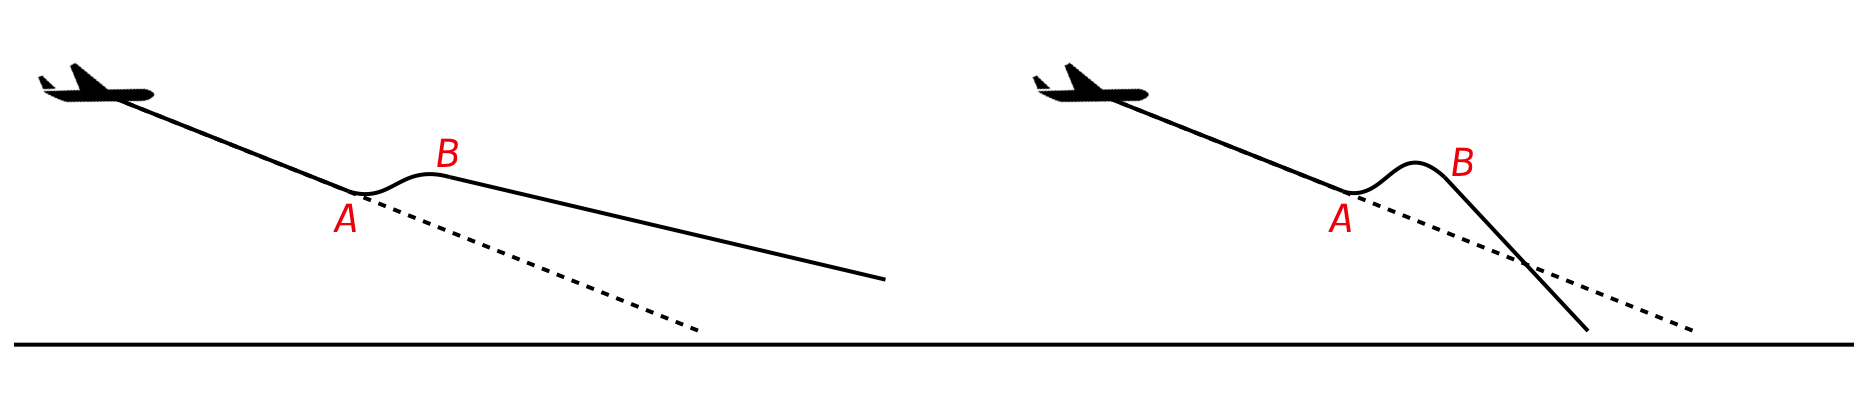 aircraft flight paths